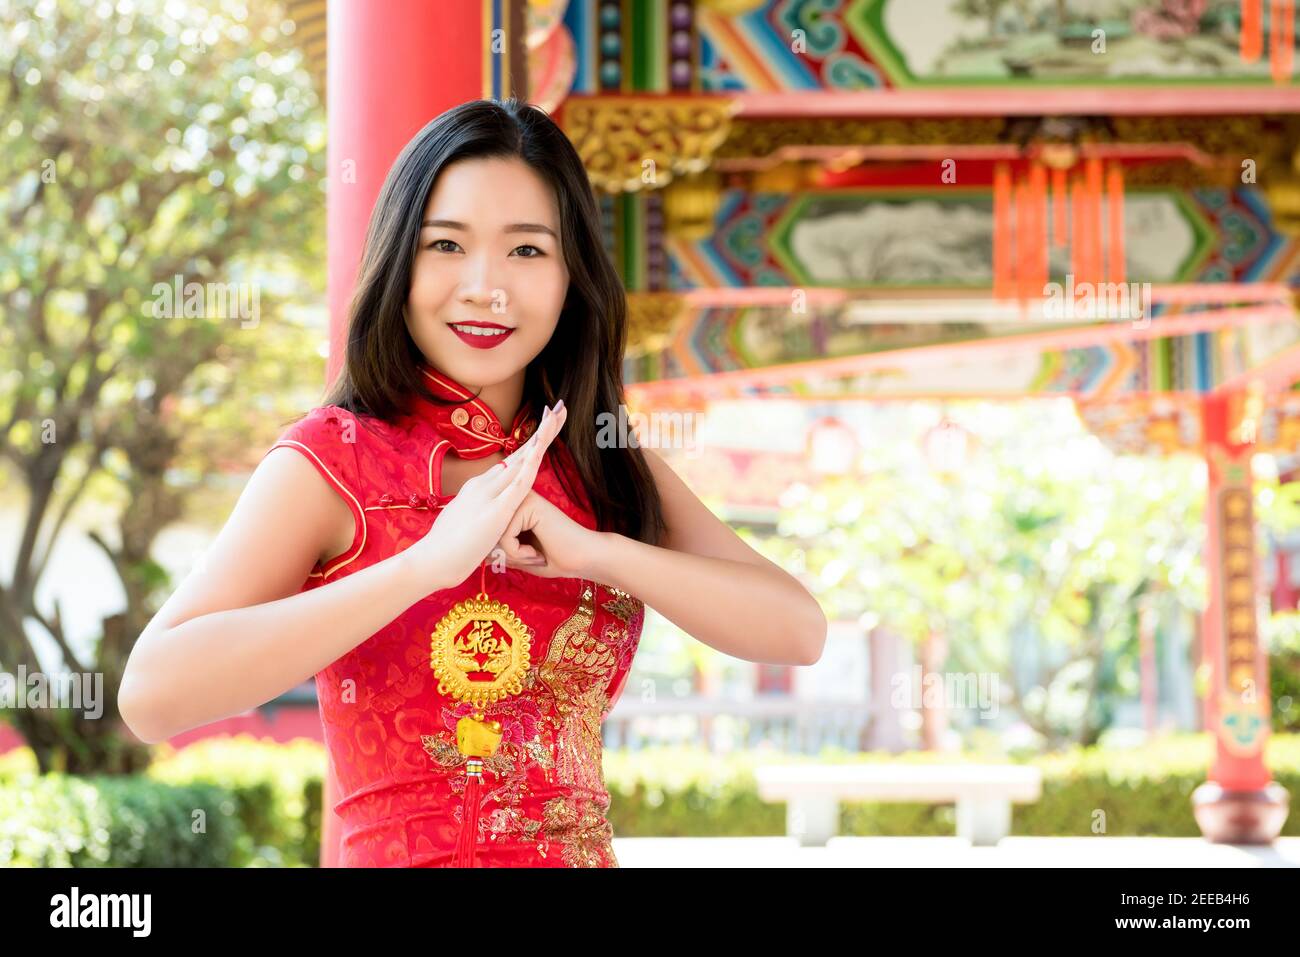 Lächelnde asiatische Frau in traditionellen roten Cheongsam Qipao Kleid machen Gruß mit chinesischen Neujahrsgruß Schild in der Hand sagte 'Glück und gute Fortun Stockfoto